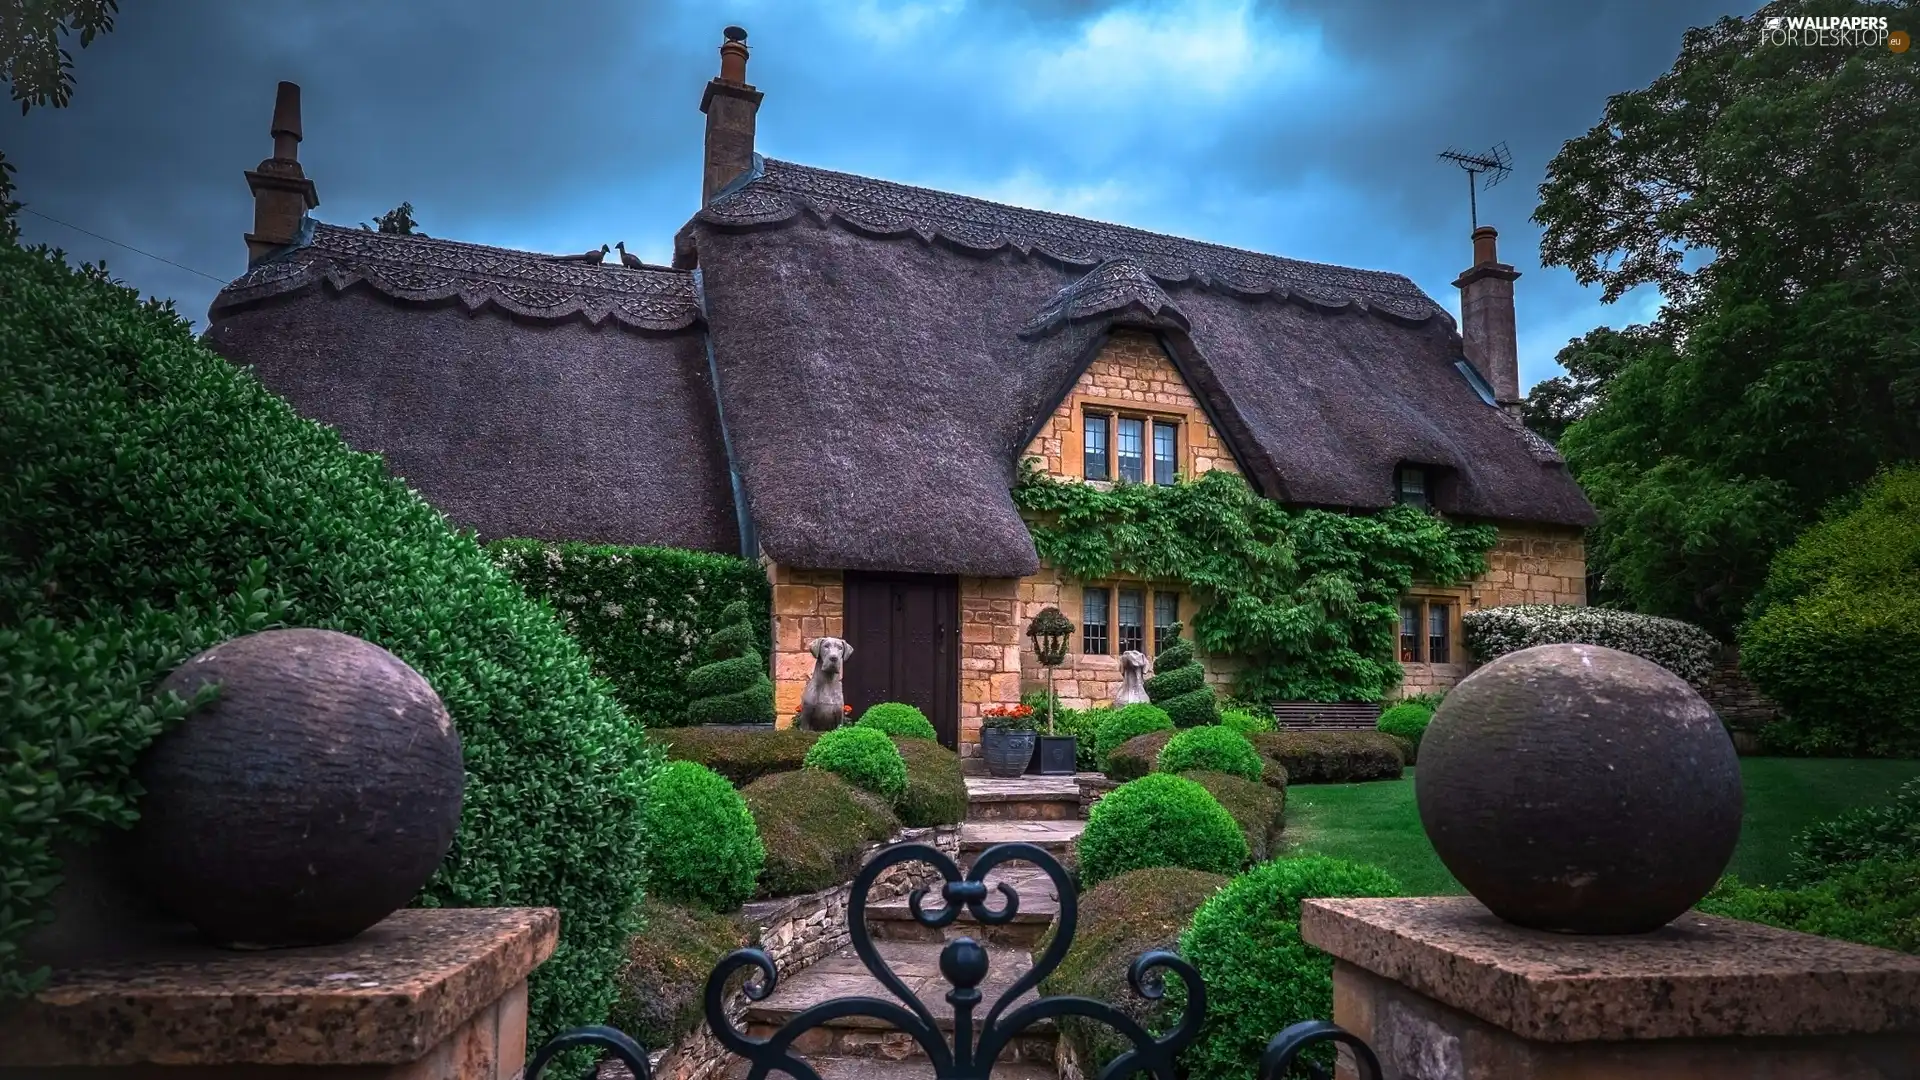 England, Garden, Cloudy Day, house